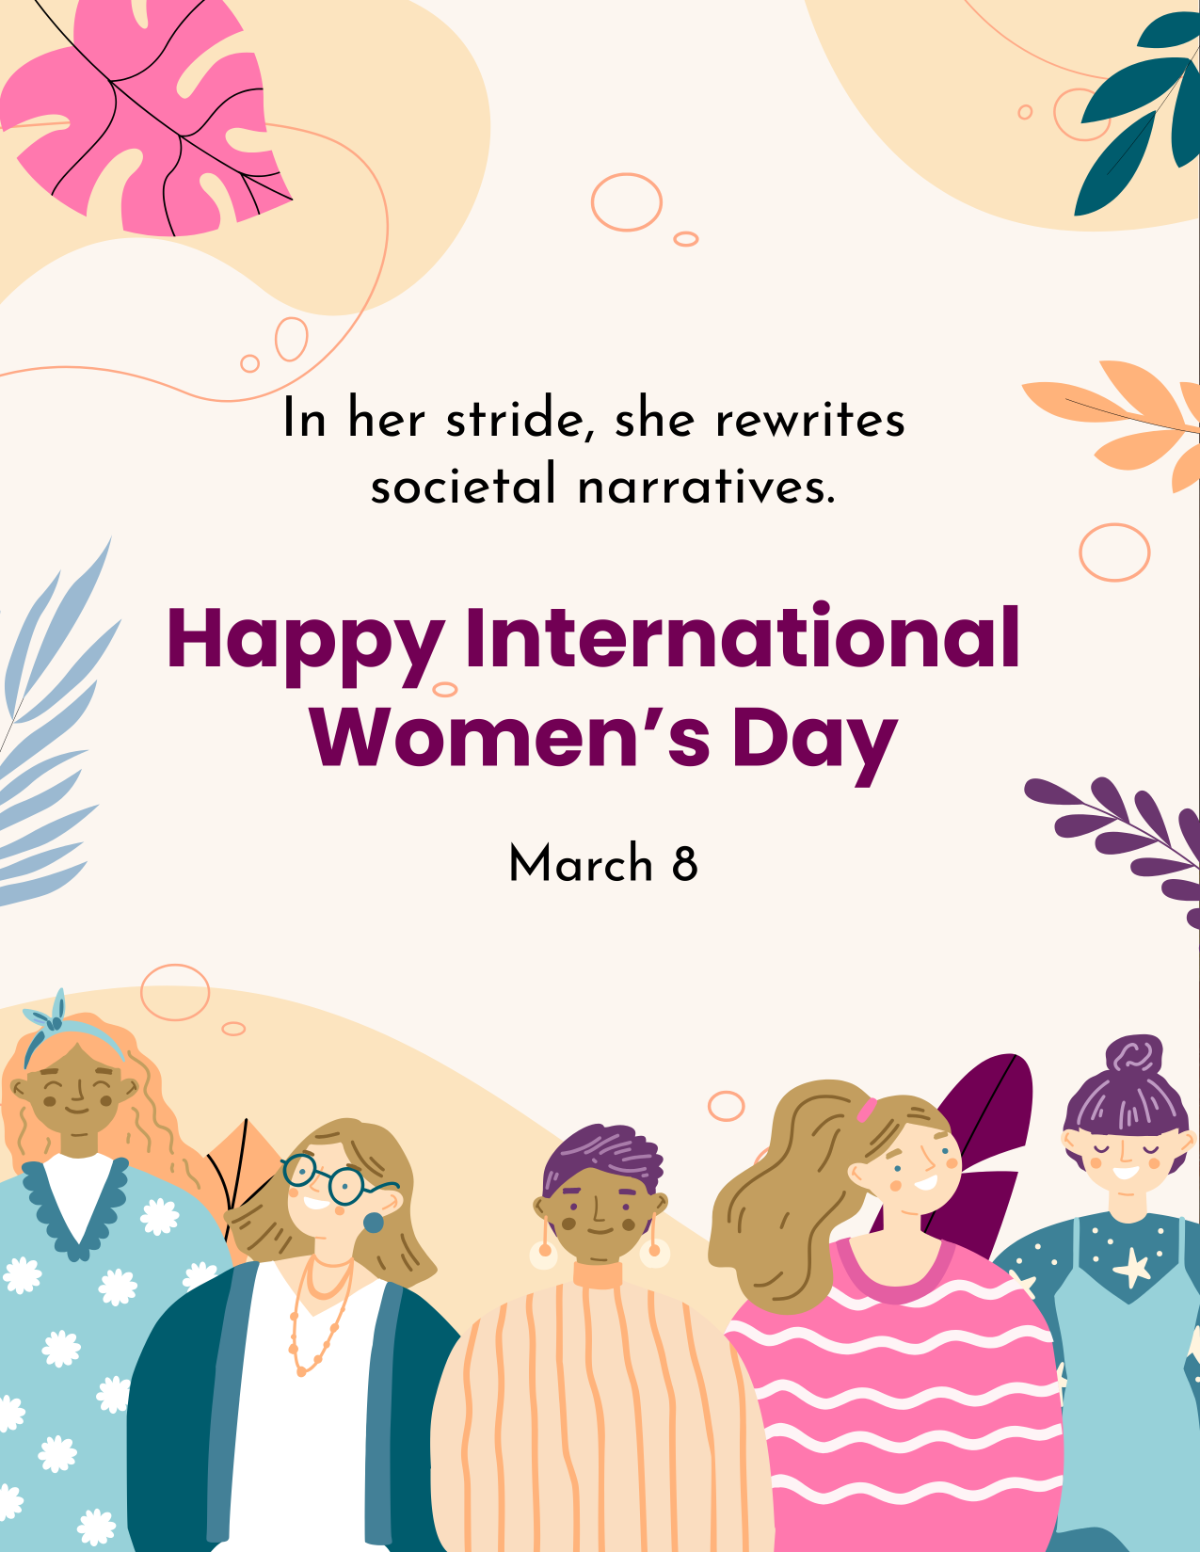 International Women's Day Flyer Template